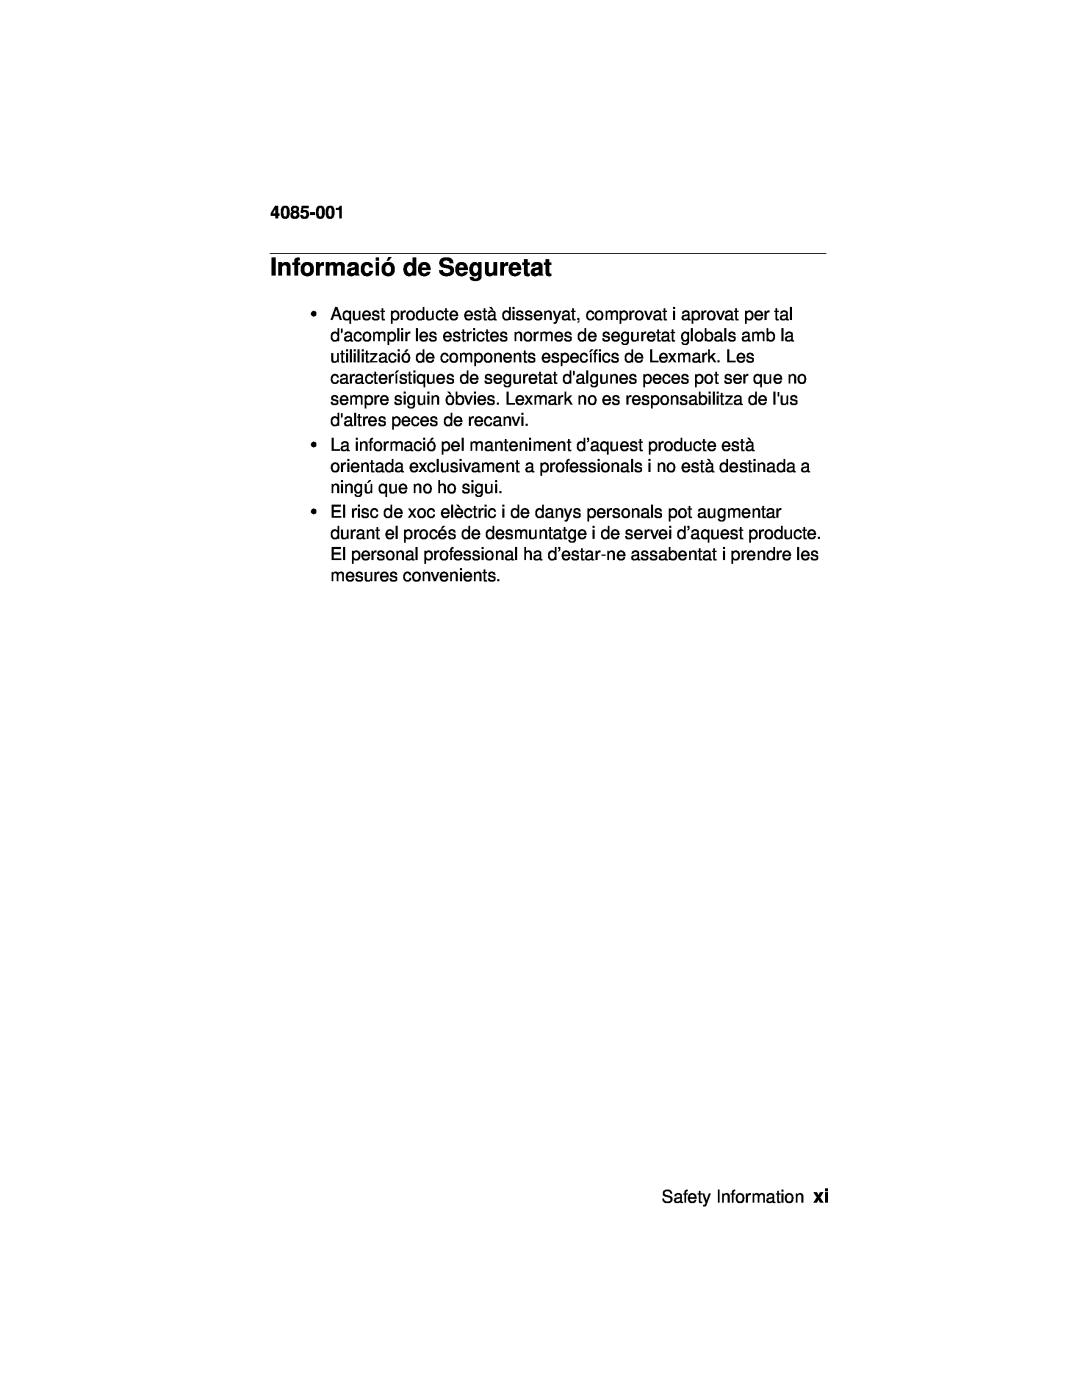 Lexmark Printer, J110 manual Informació de Seguretat, 4085-001 